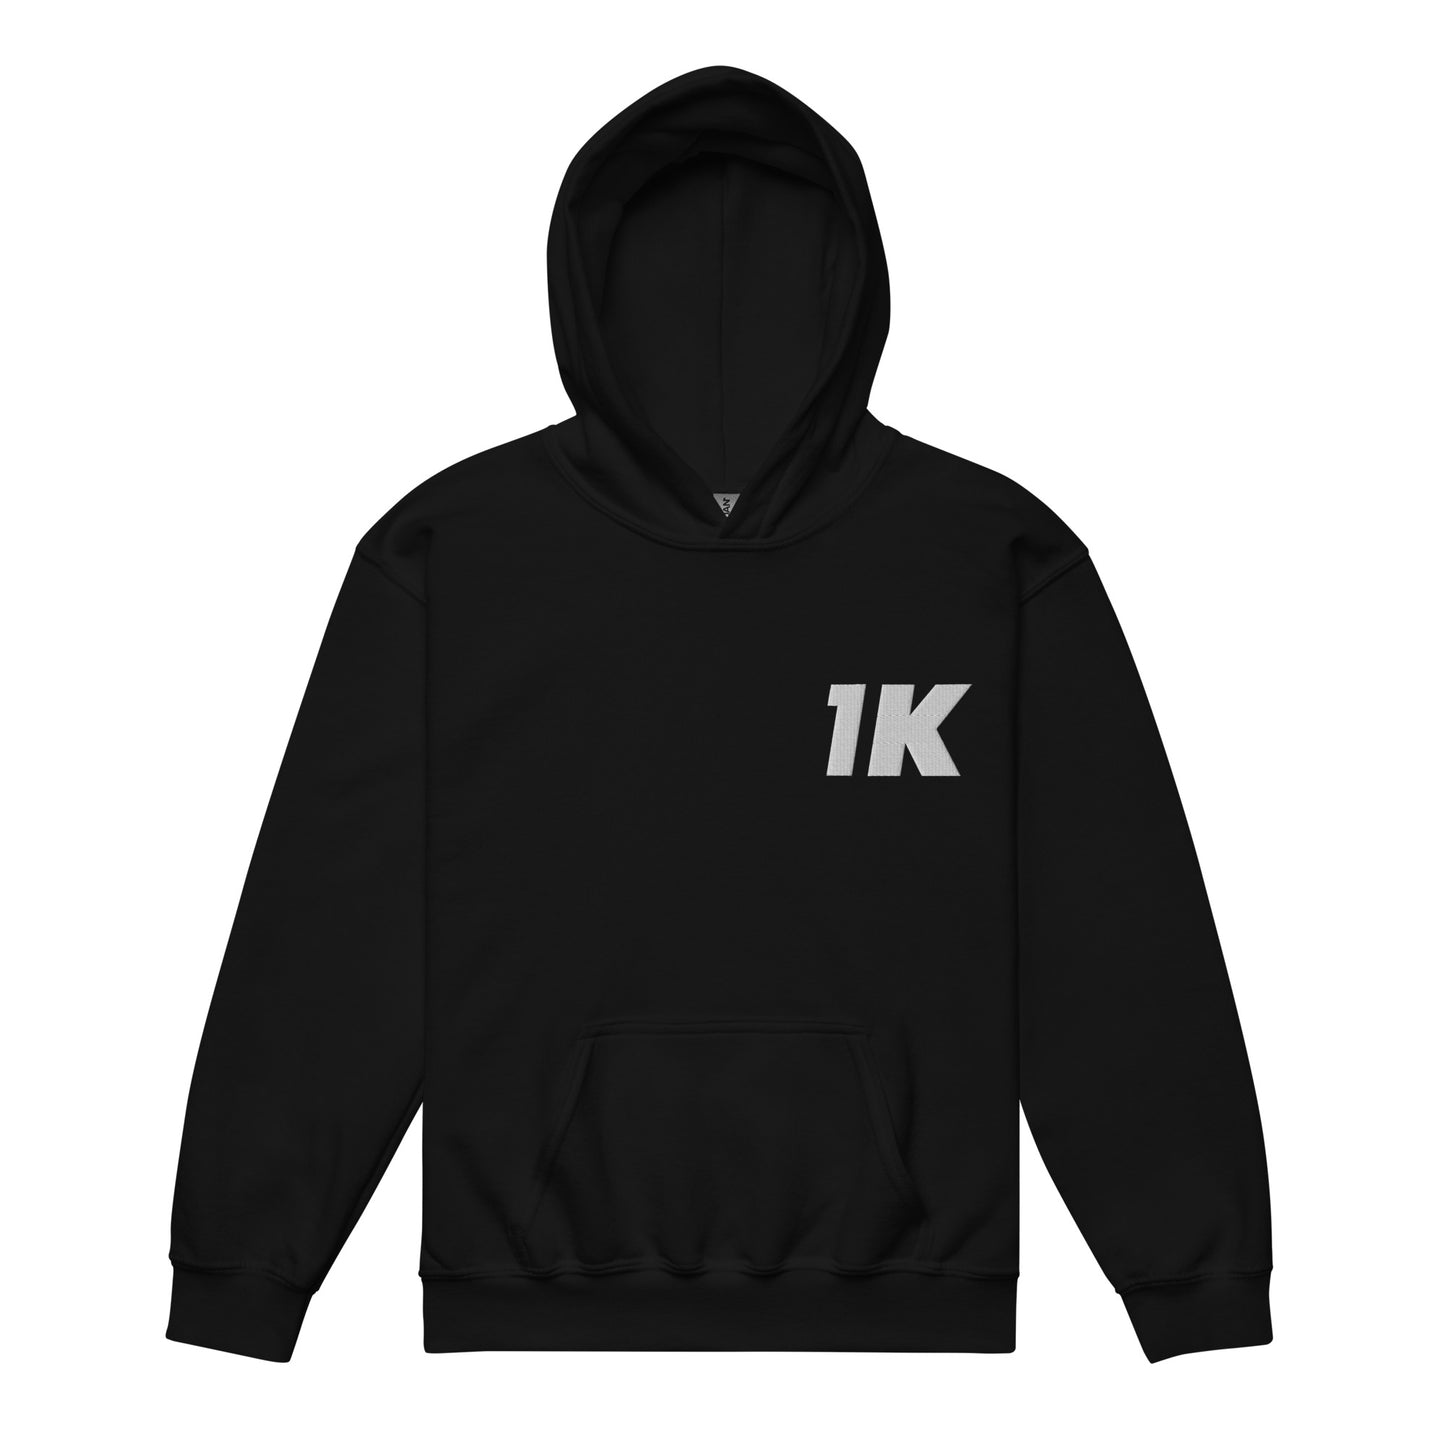 Kids' 1K hoodie